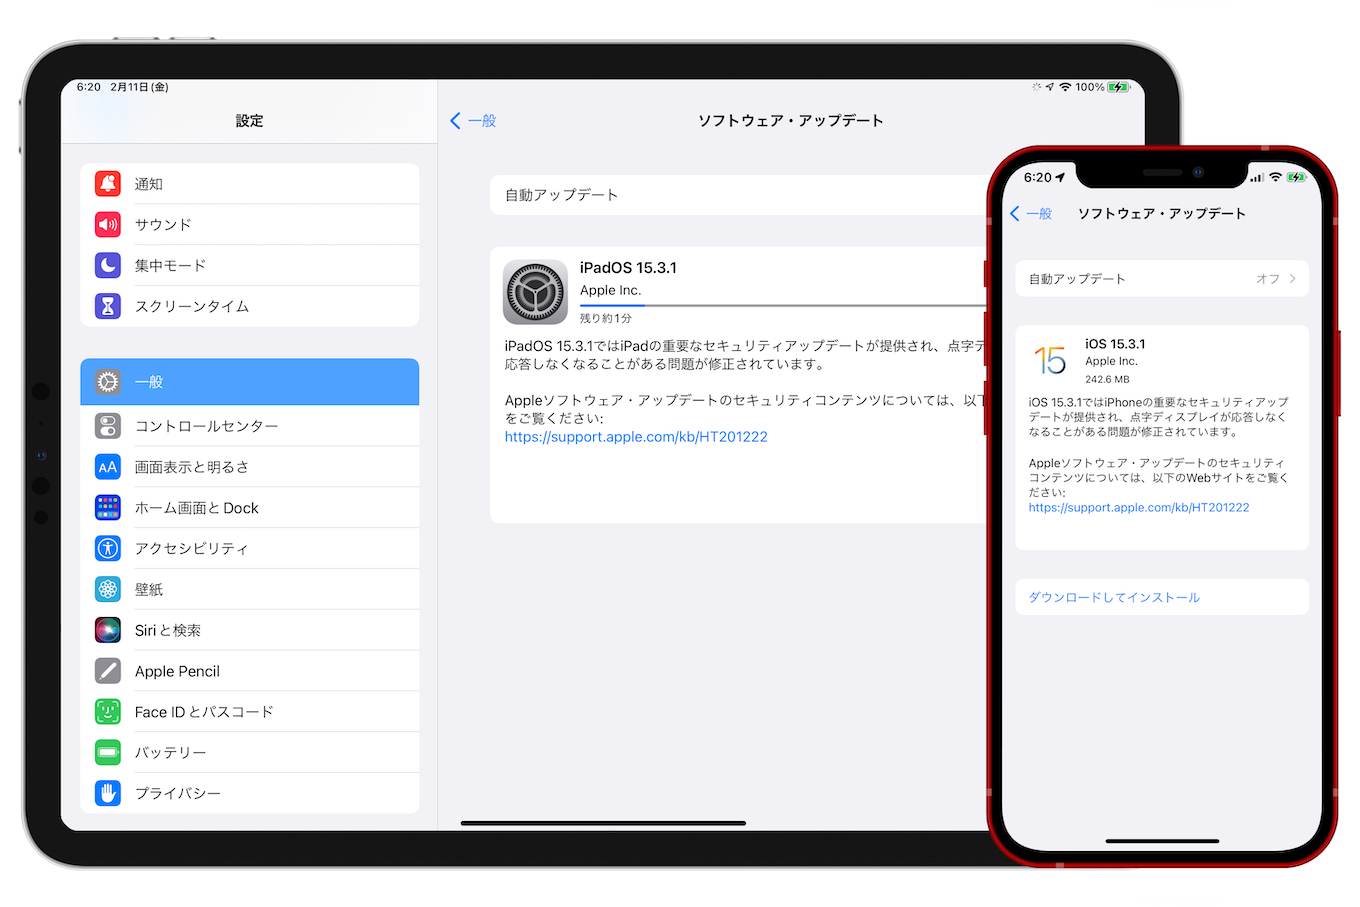 iOS 15.3.1 and iPadOS 15.3.1 (19D52)